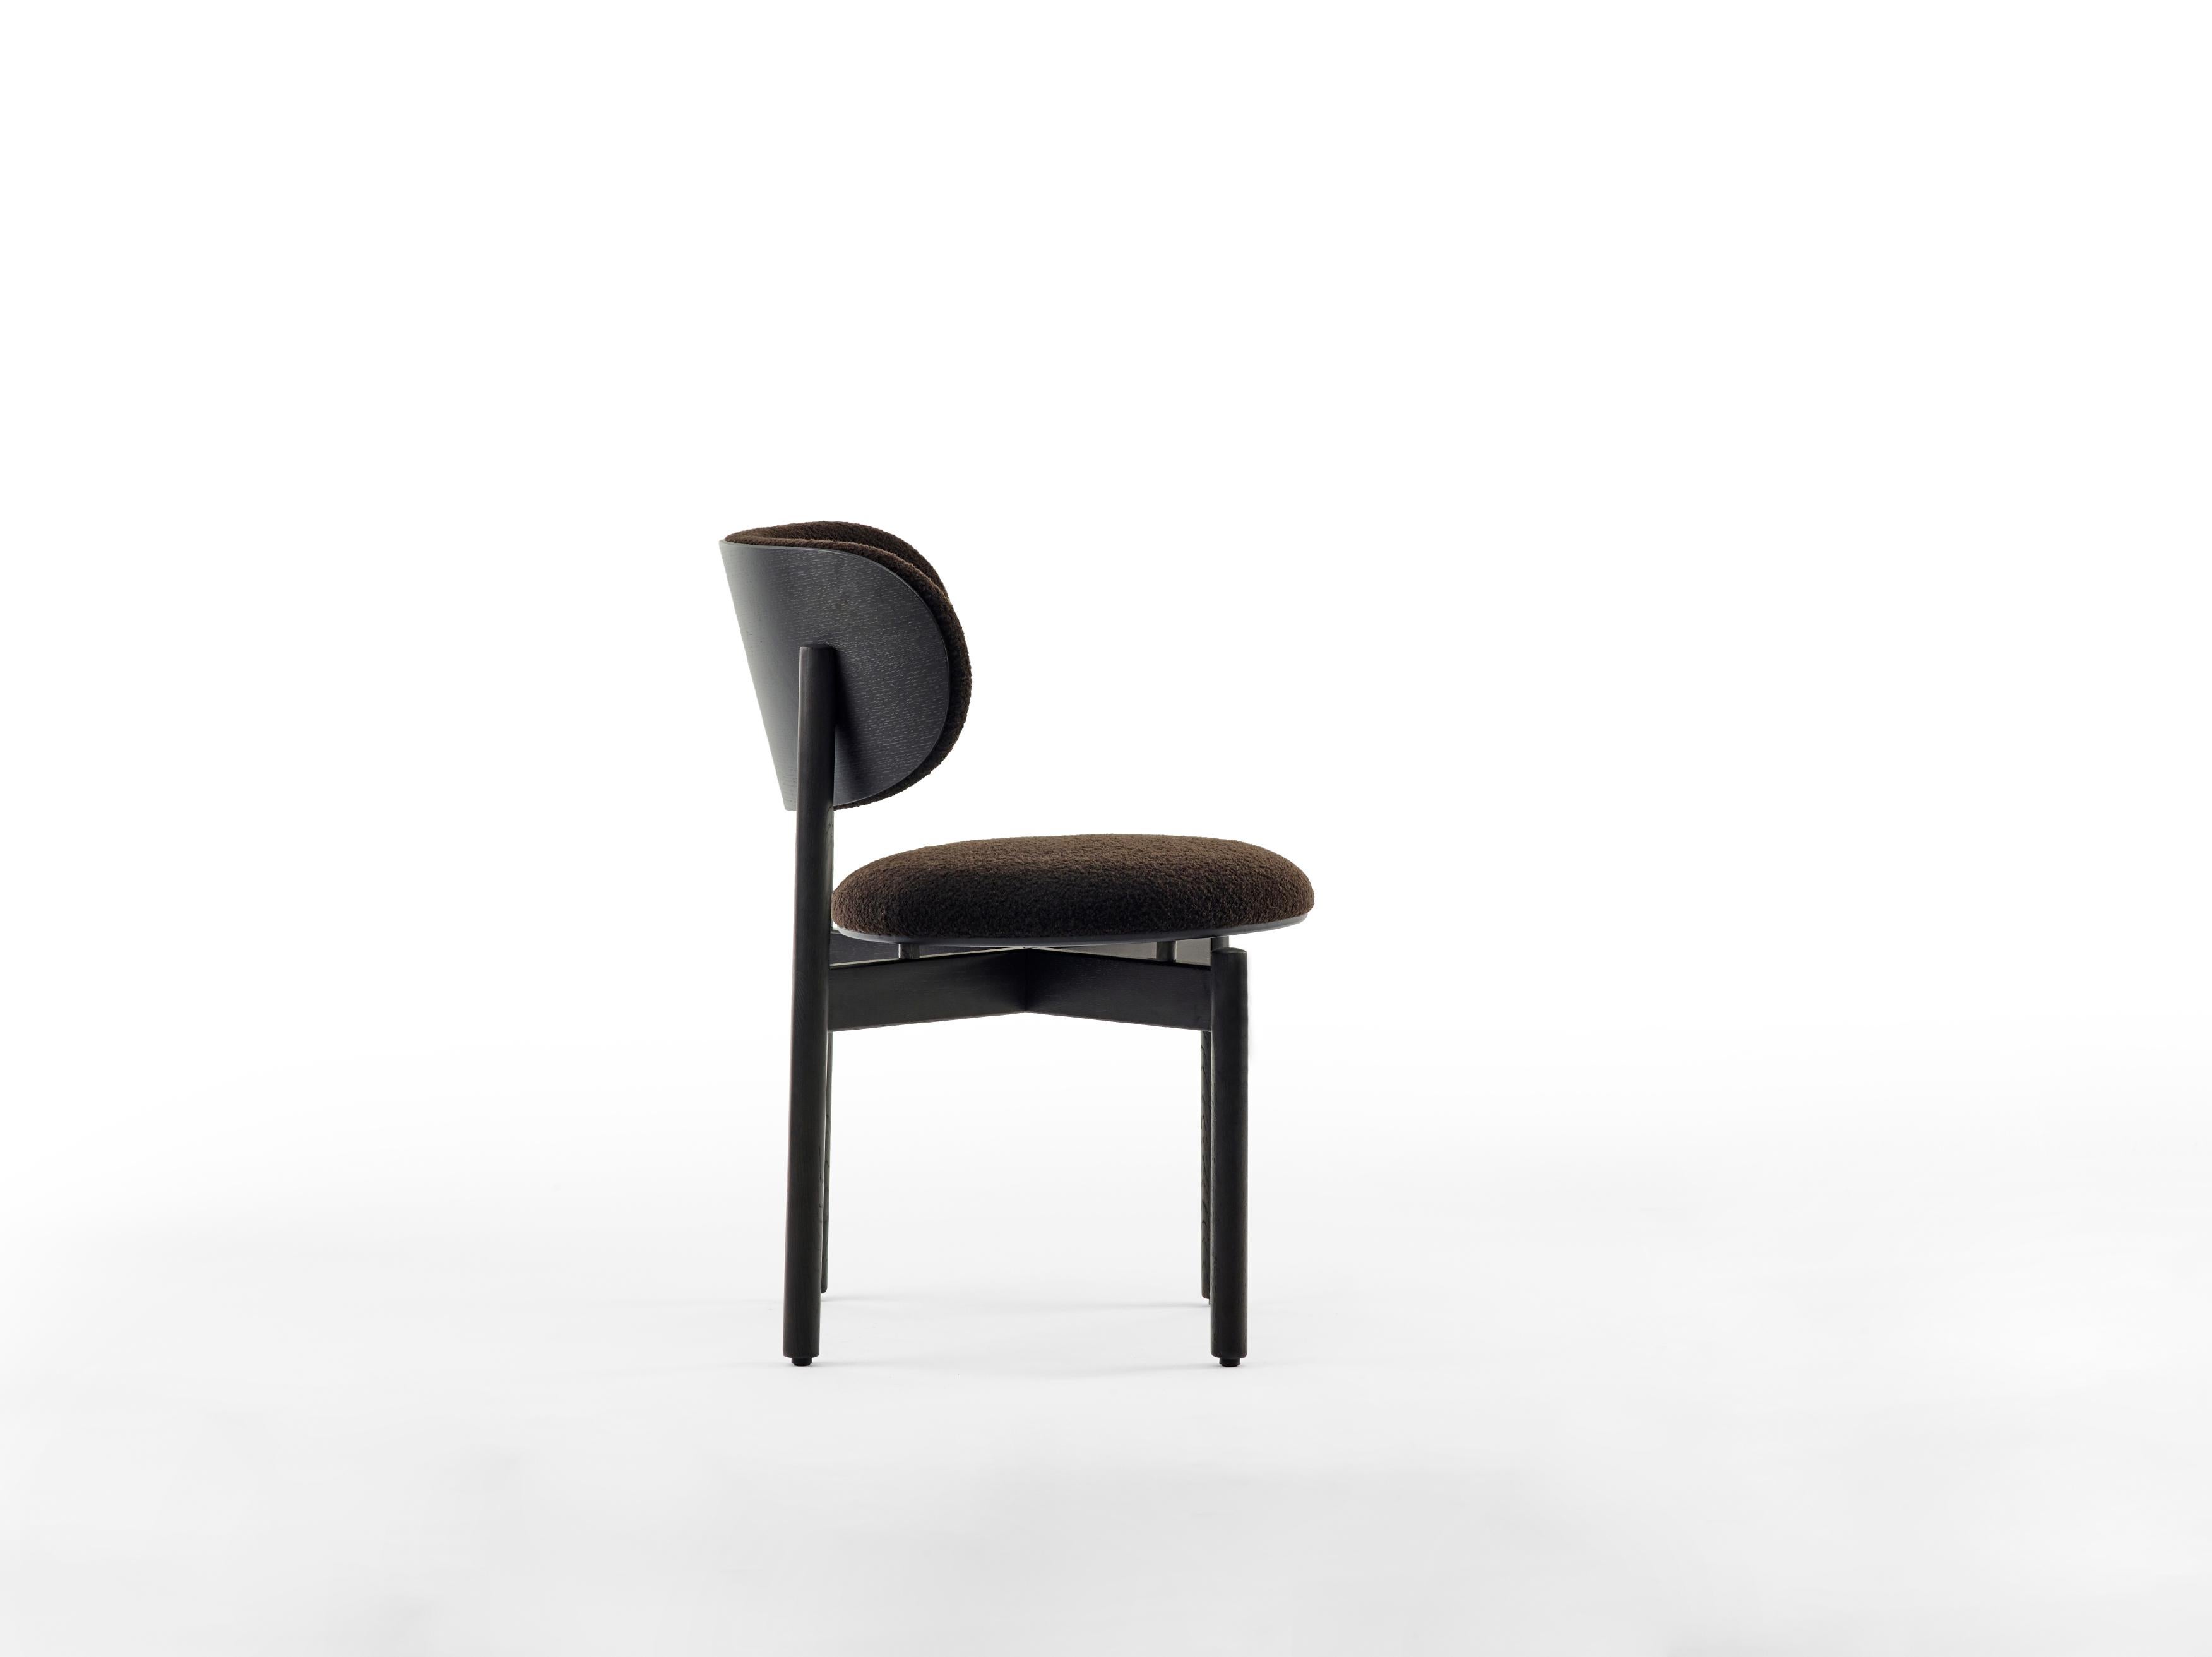 Ein neuer Stuhl vom Designer des beliebten Close und Close+ von Arco. Wie bei den anderen Tischen von Arco steht auch beim Re-volve die Nachhaltigkeit im Vordergrund.

Der Designer Gudmundur Ludvik hat den Re-volve aus rein organischen Materialien